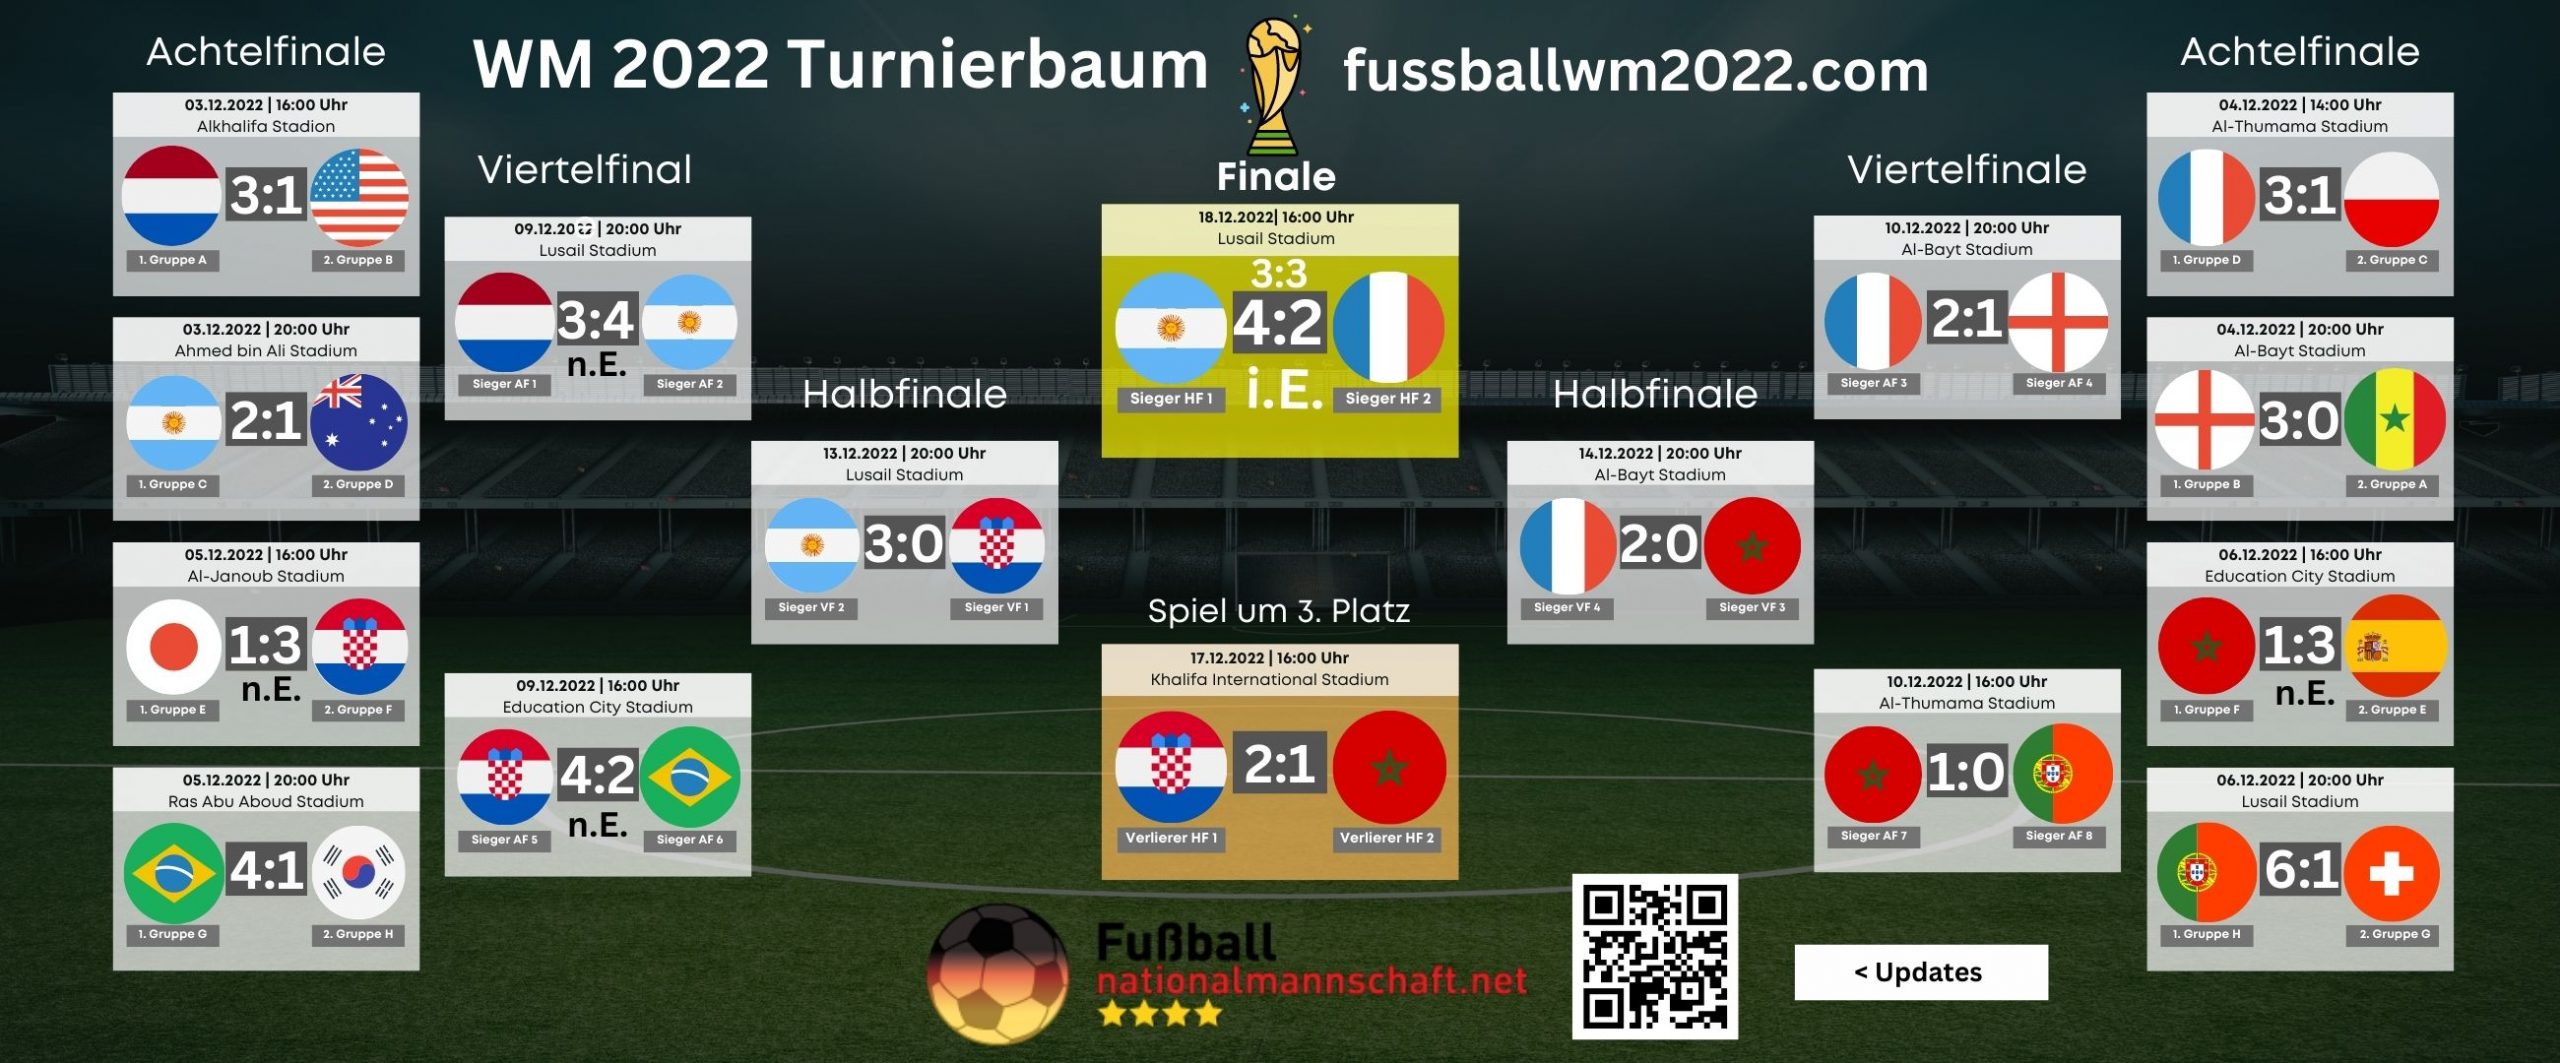 WM 2022 Turnierbaum der K.o.-Phase - WM Plan 2022